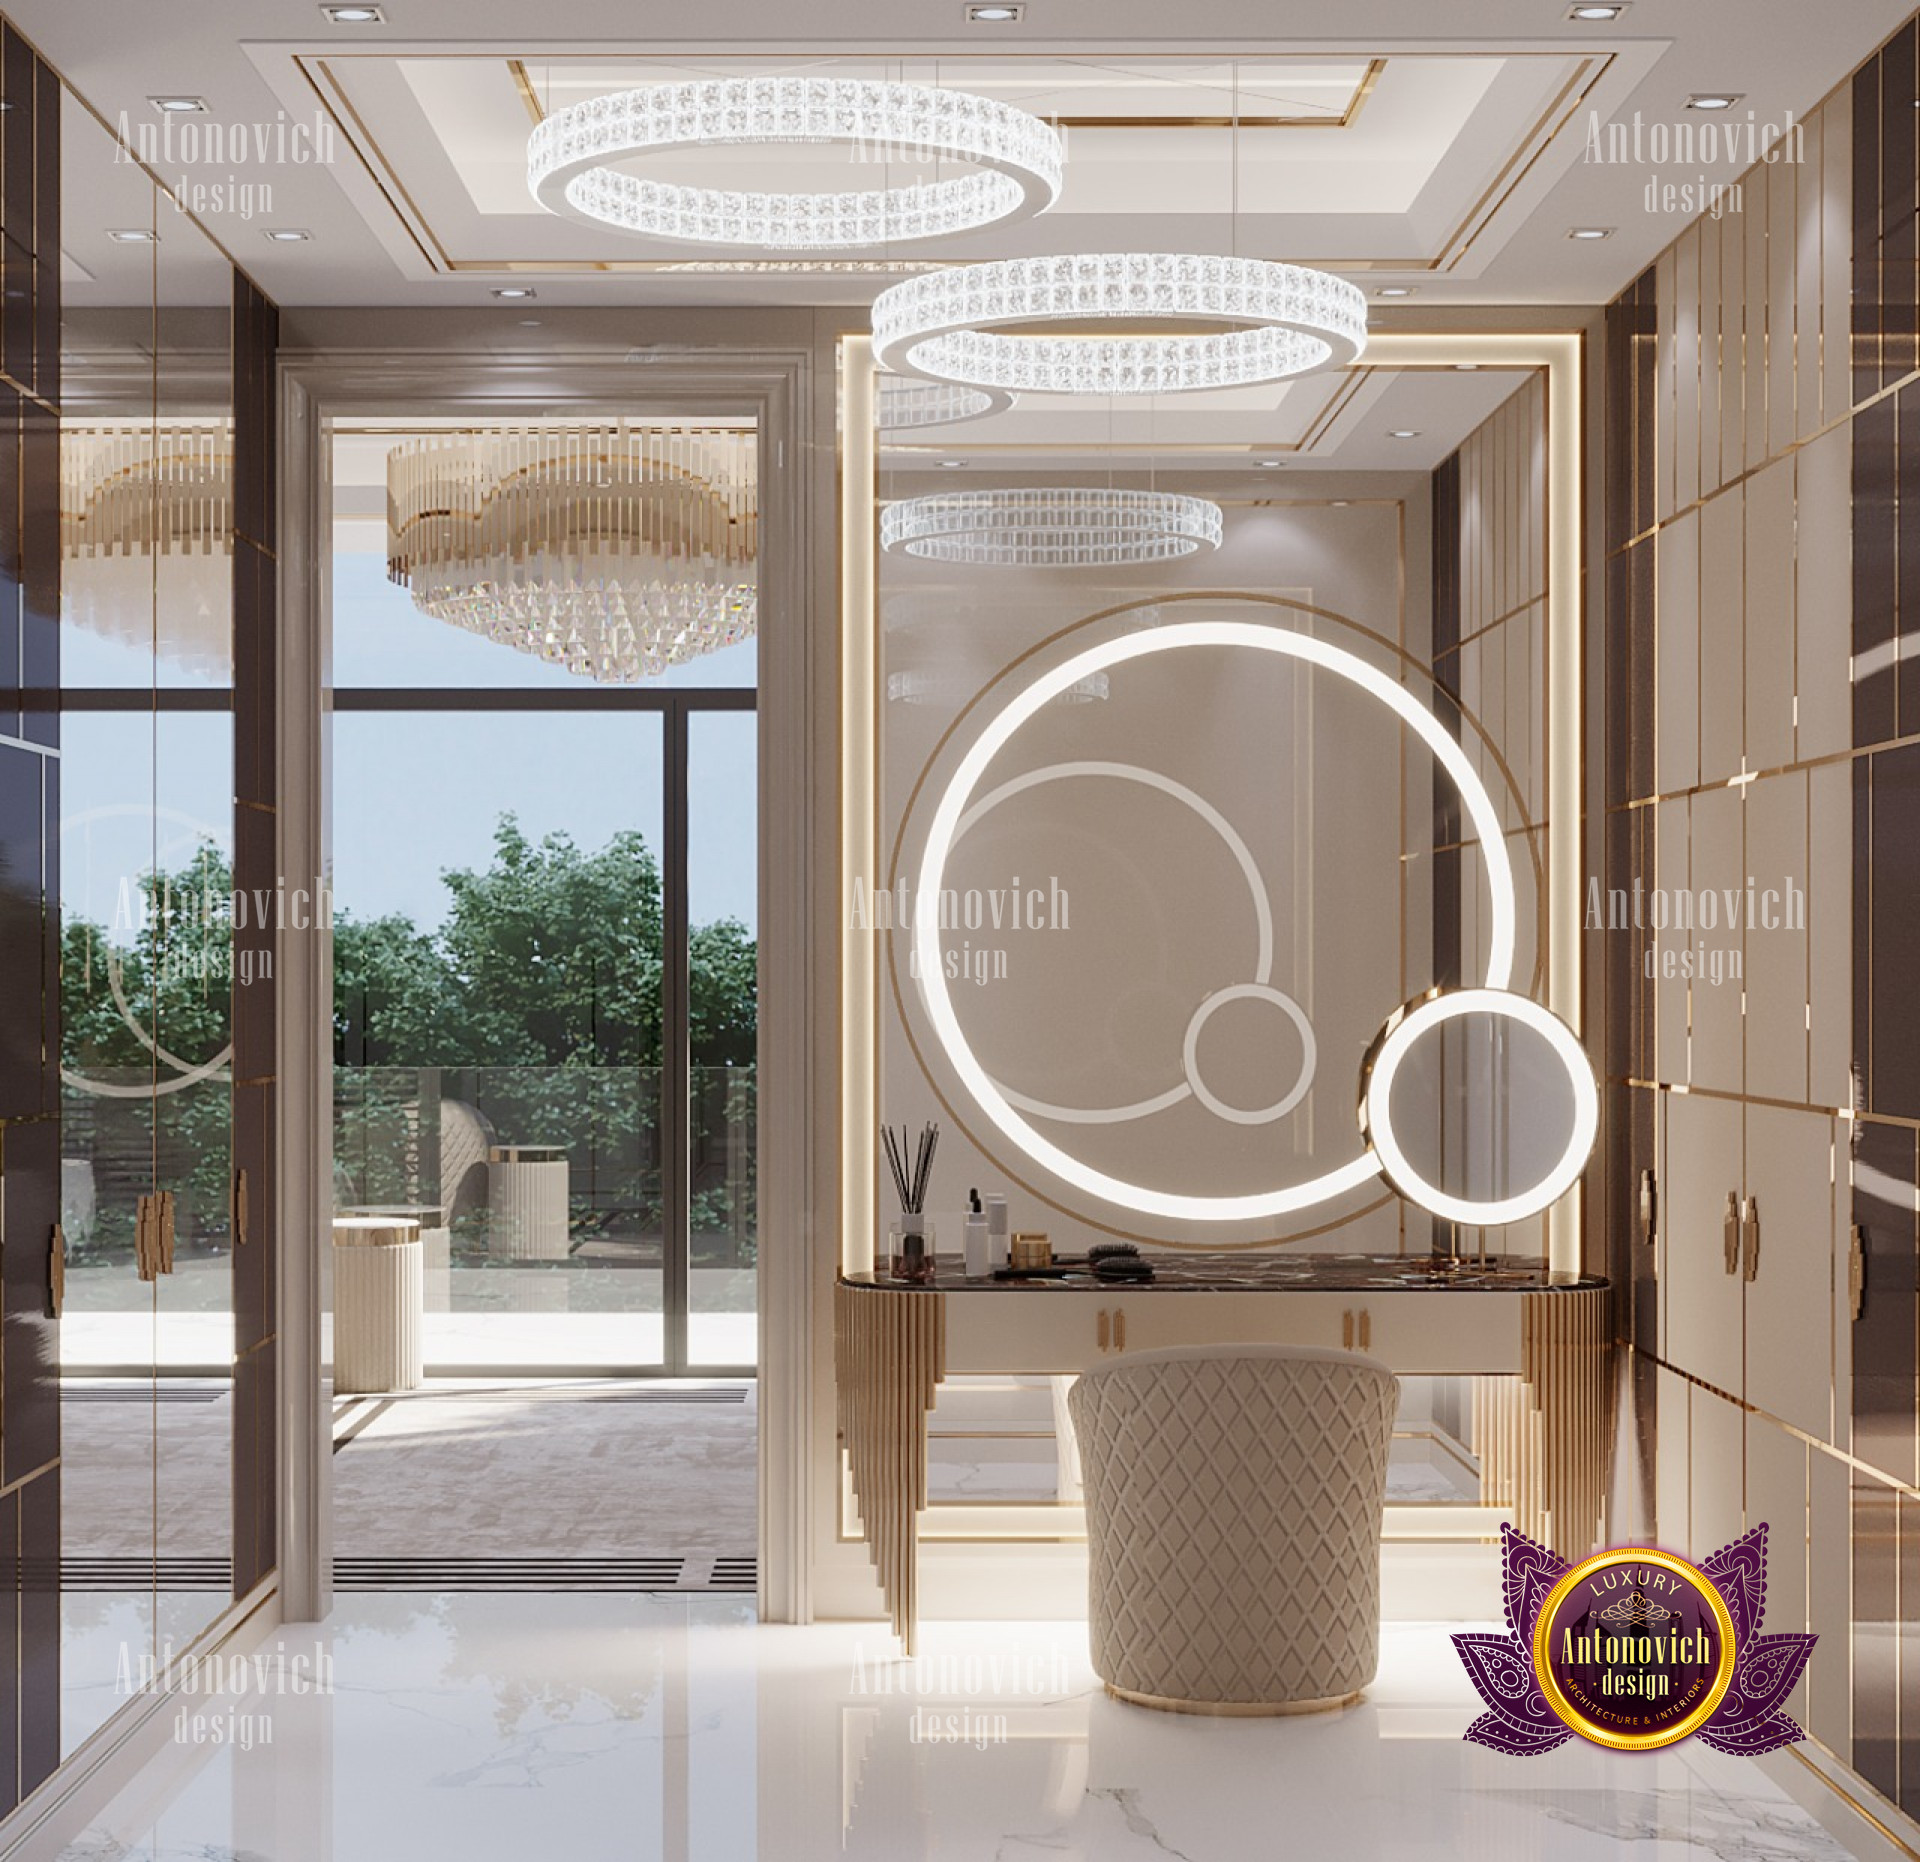 7 Luxury Closet Ideas For Dubai: Finest Interior Design